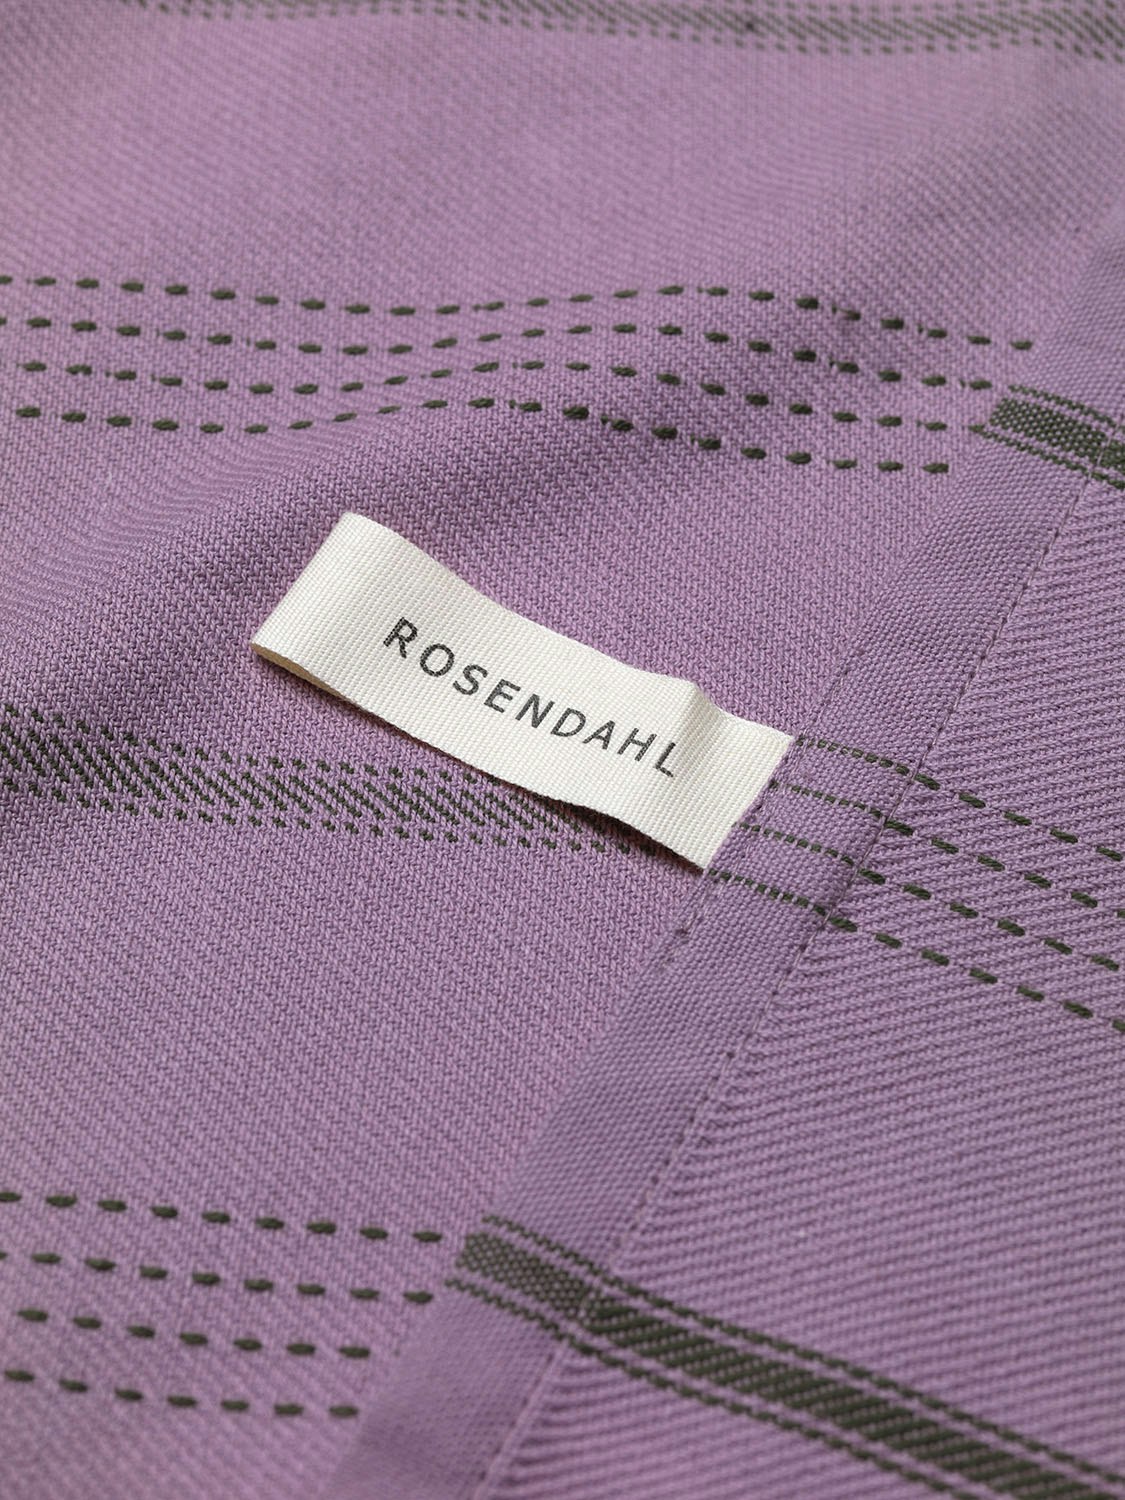 https://royaldesign.com/image/2/rosendahl-copenhagen-r-t-beta-kokshandduk-50x70-cm-lavender-4